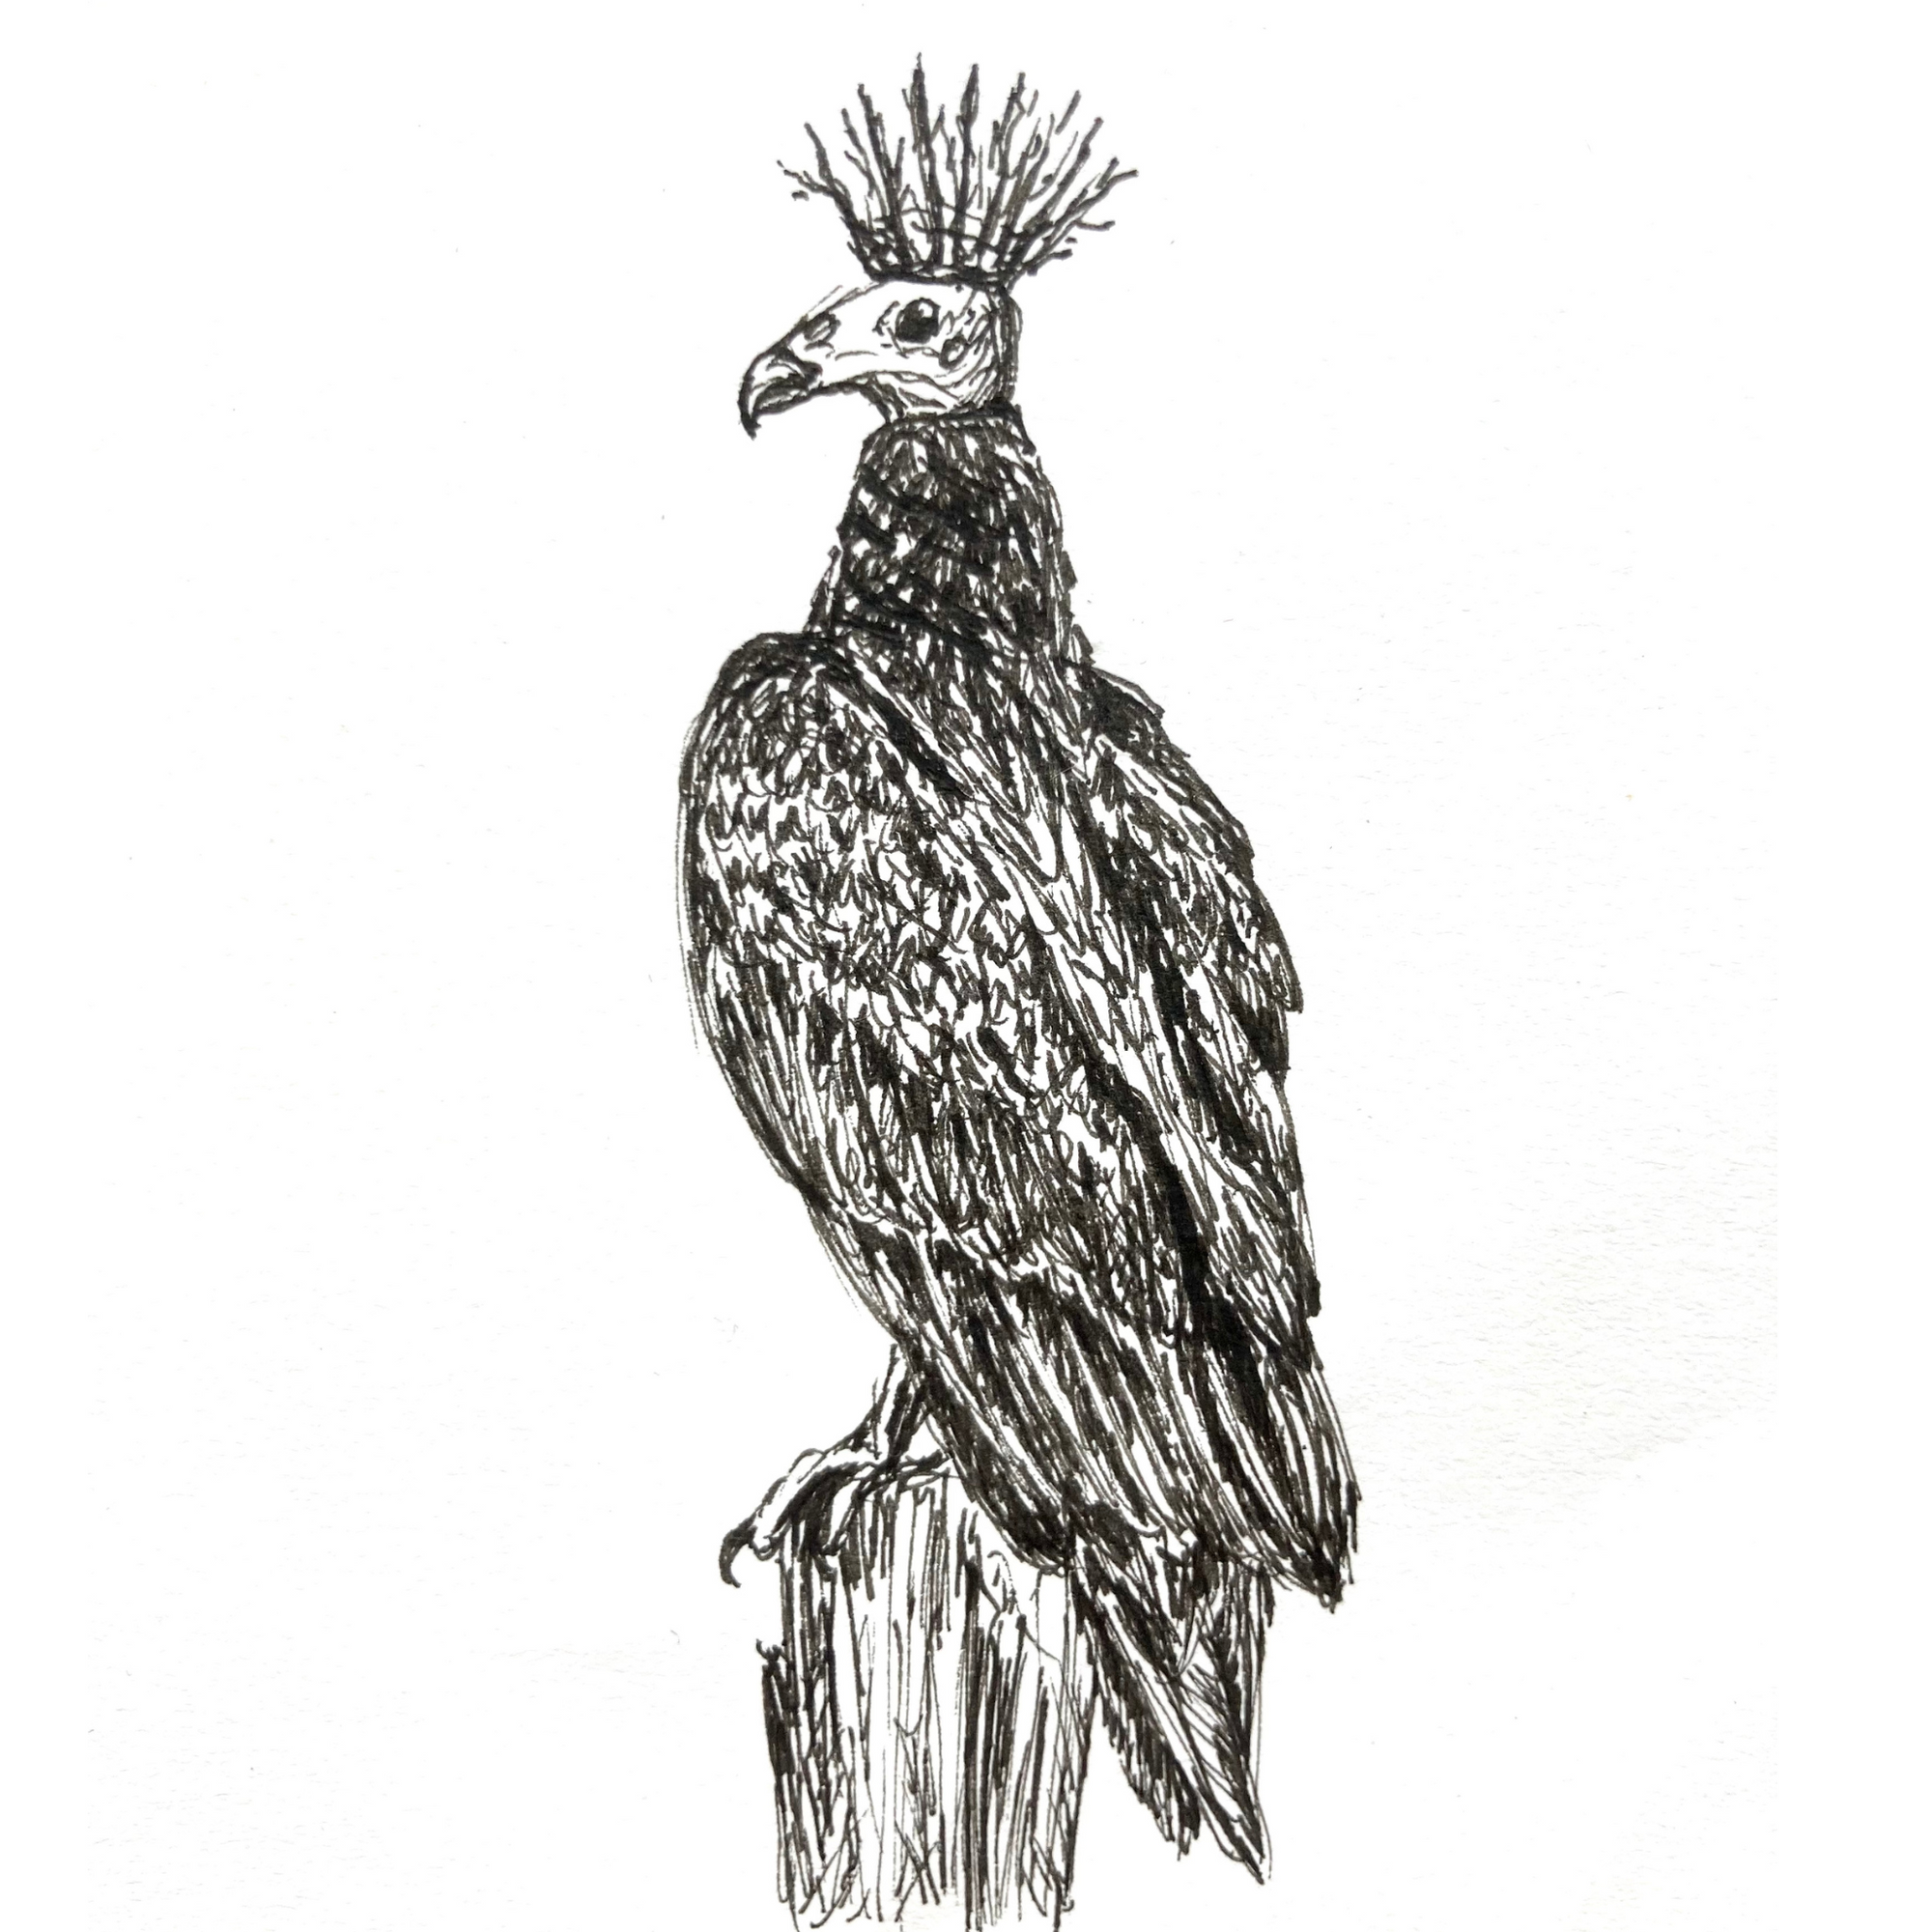 King Vulture - Original Pen & Ink Illustration